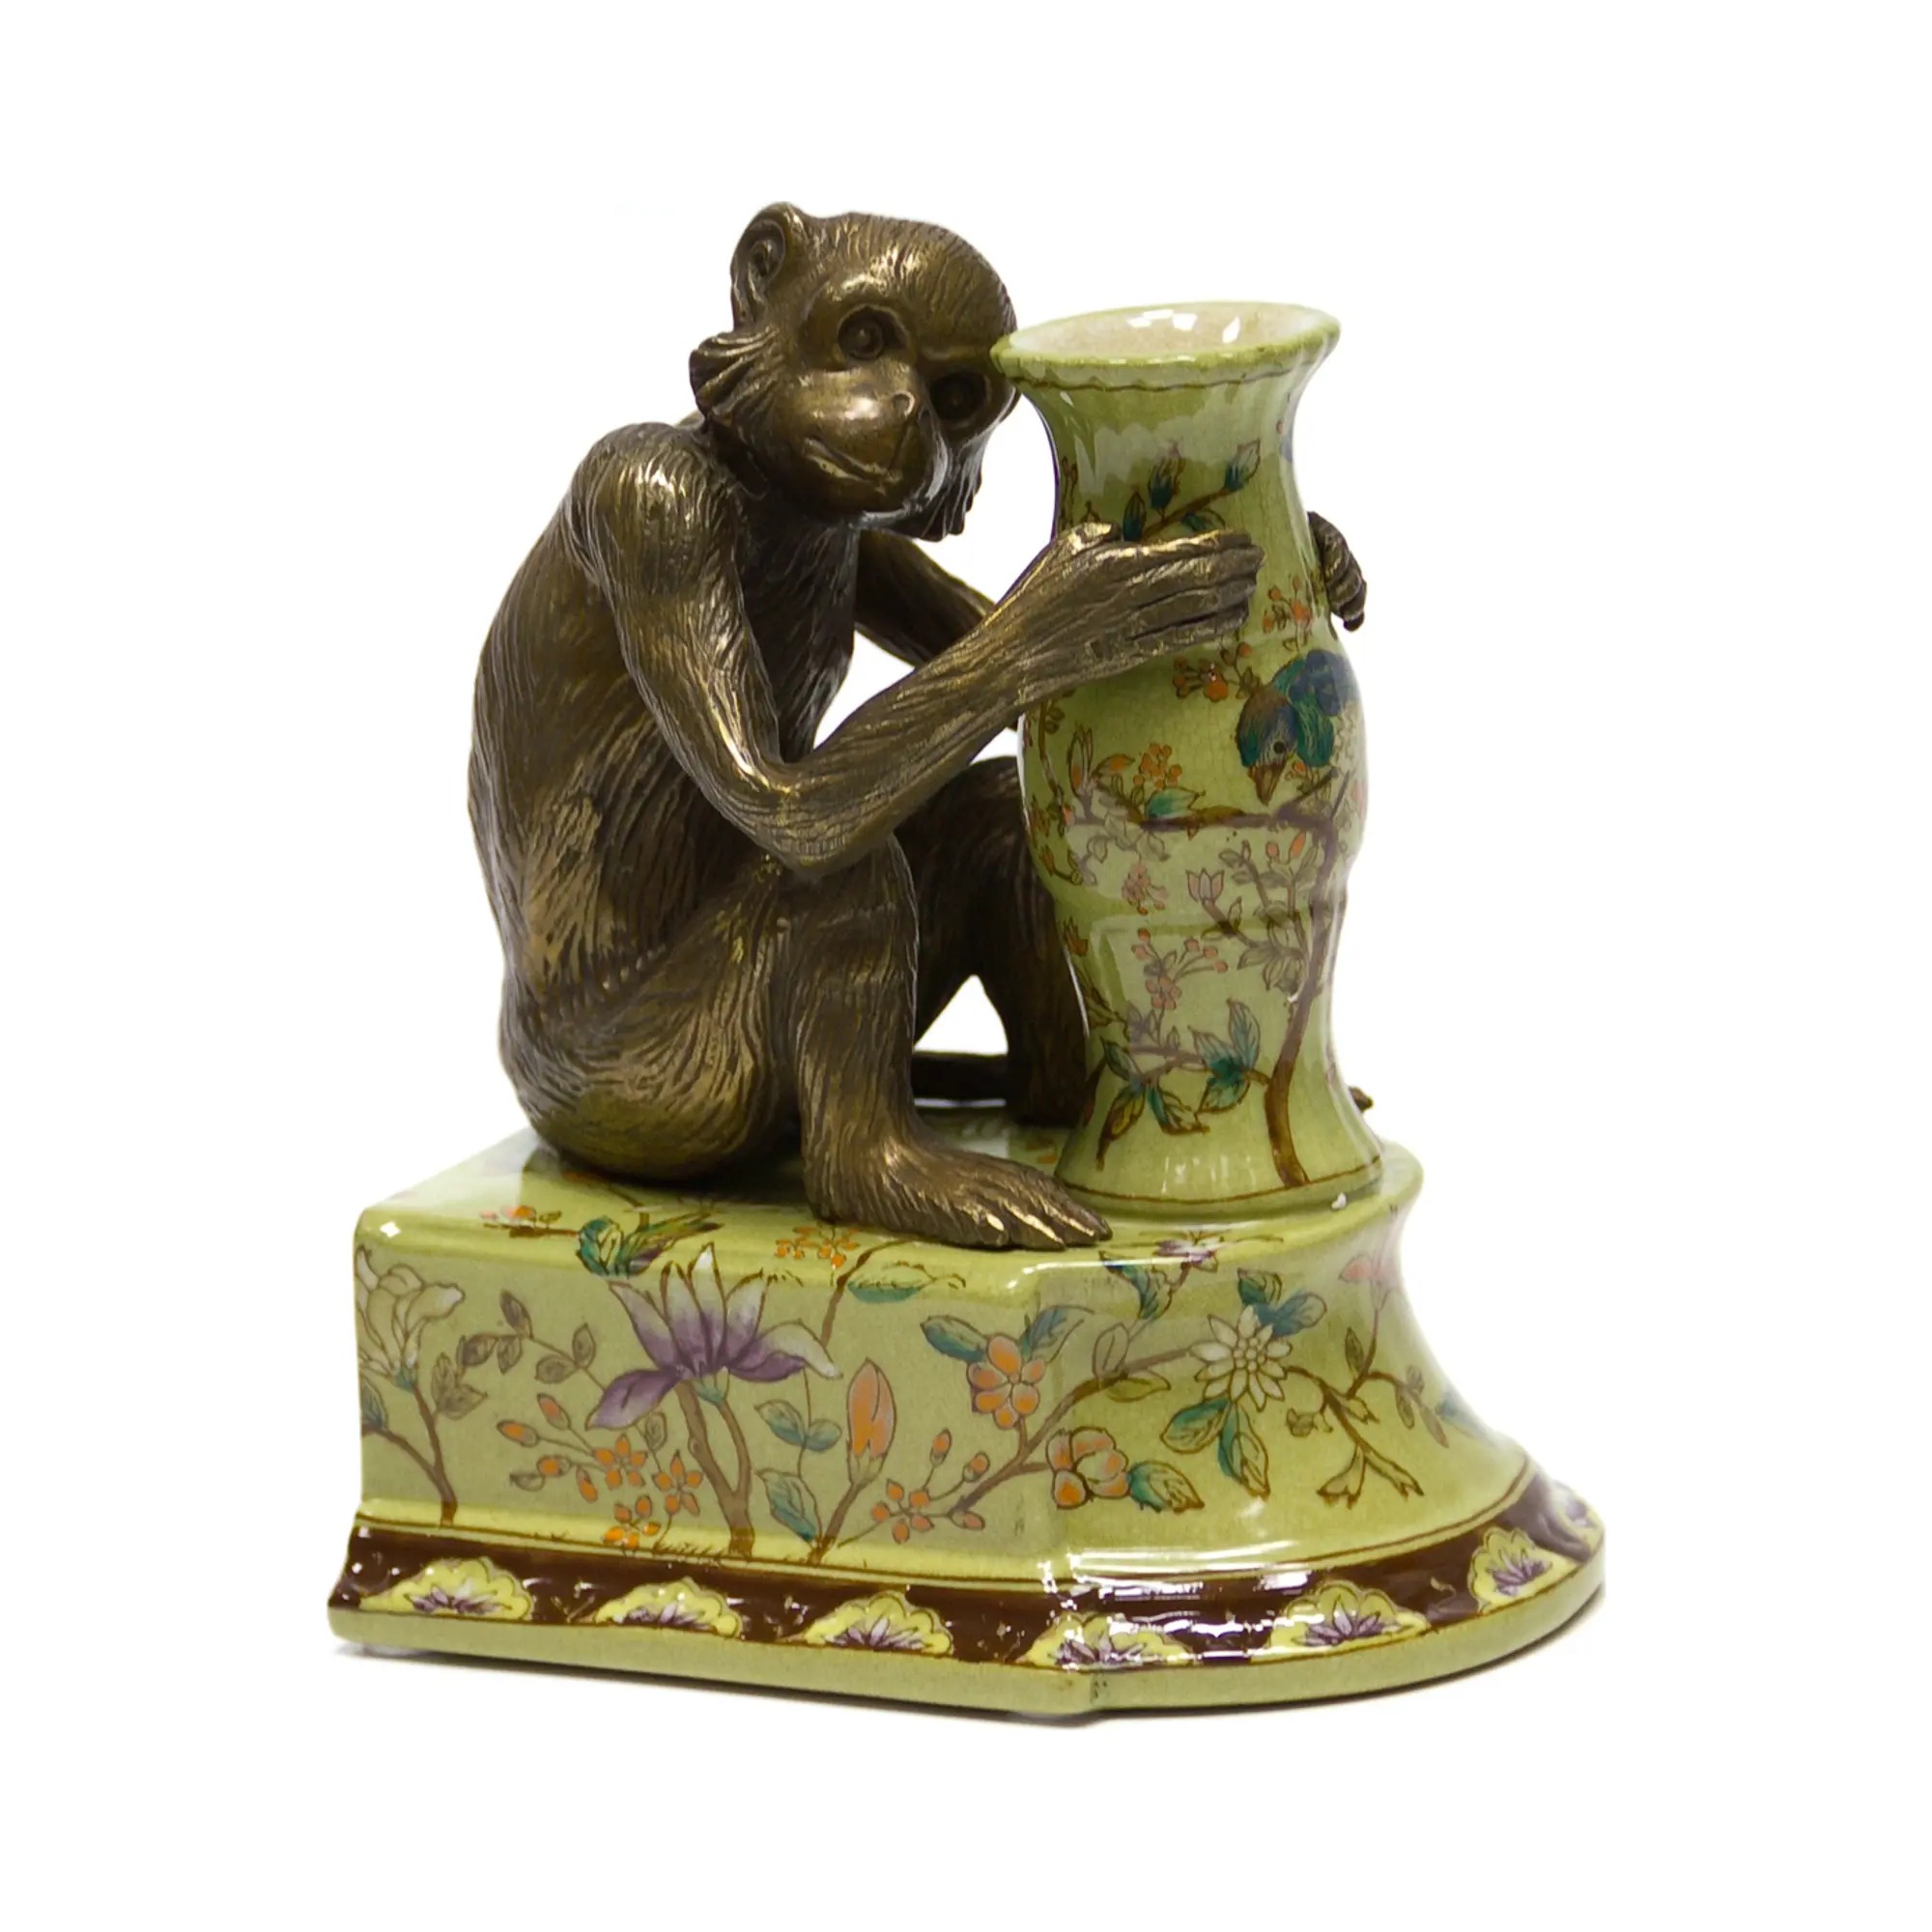 Держатель для книг Wah luen handicraft обезьяна смотрит направо 20 см держатель для книг леопард 14 5x9 6x17 5 см